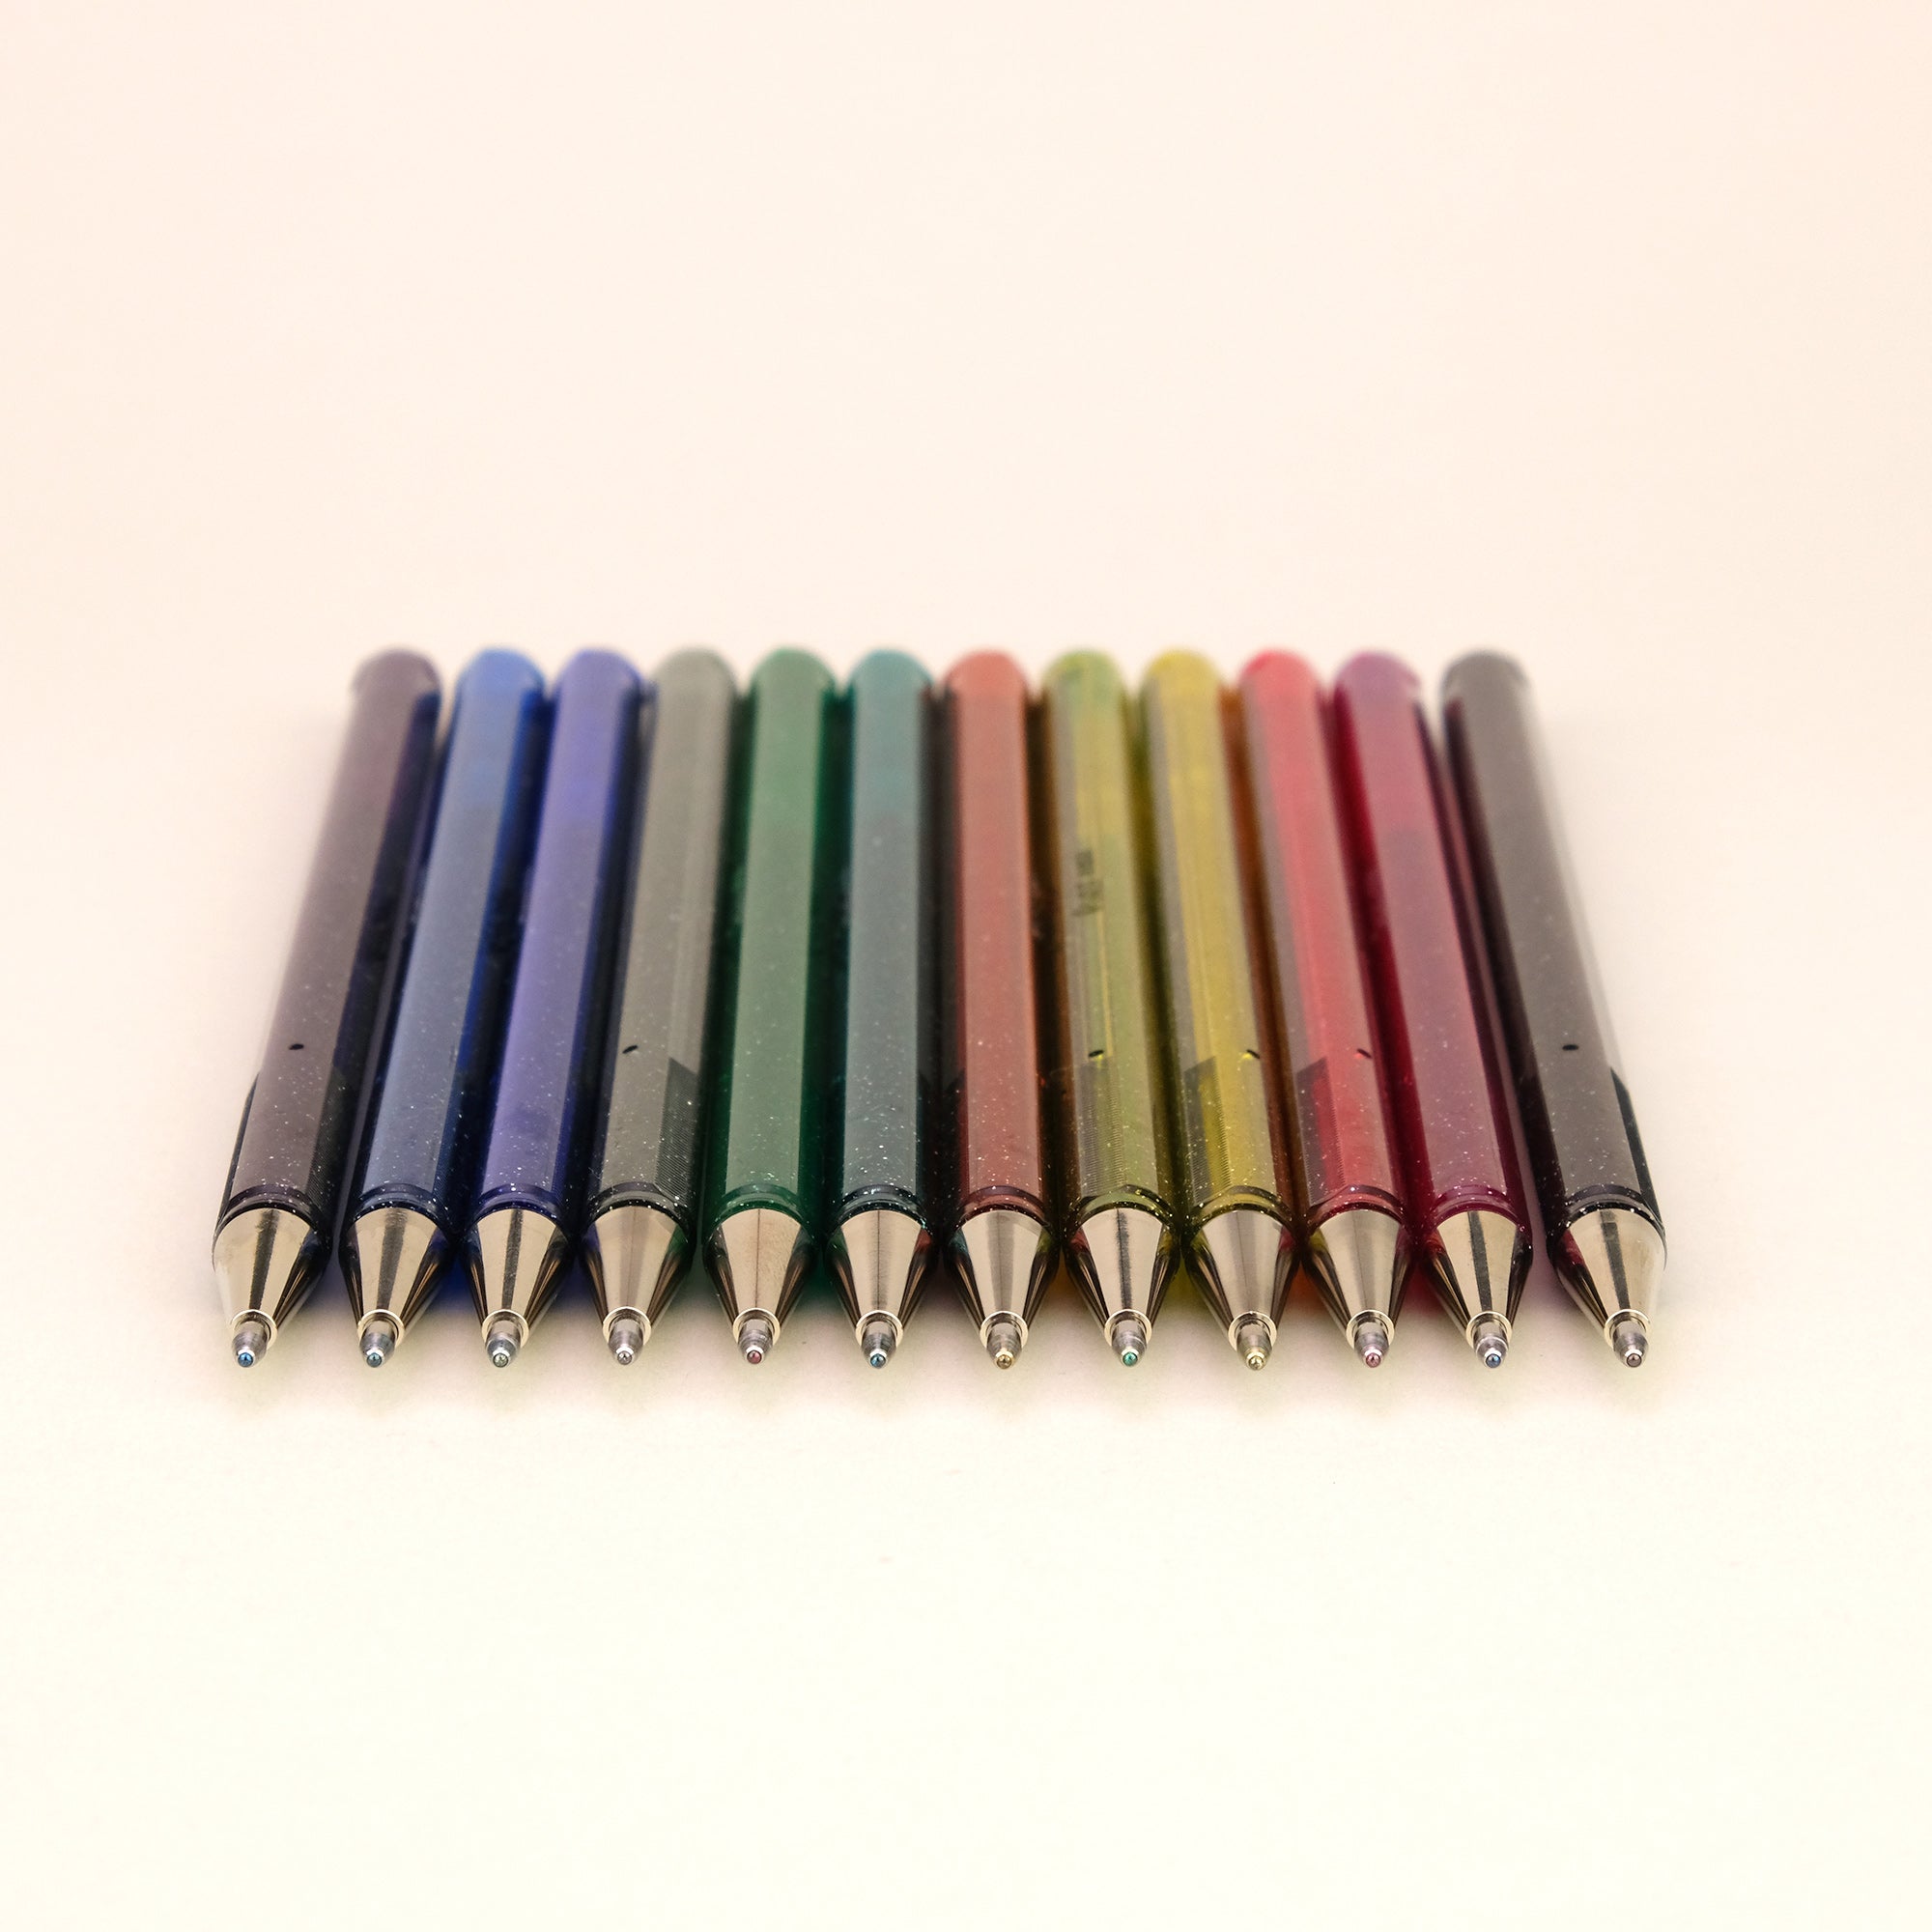 Pentel Hybrid Dual Metallic Gel Pen 1.0mm - Pink + Metallic Blue